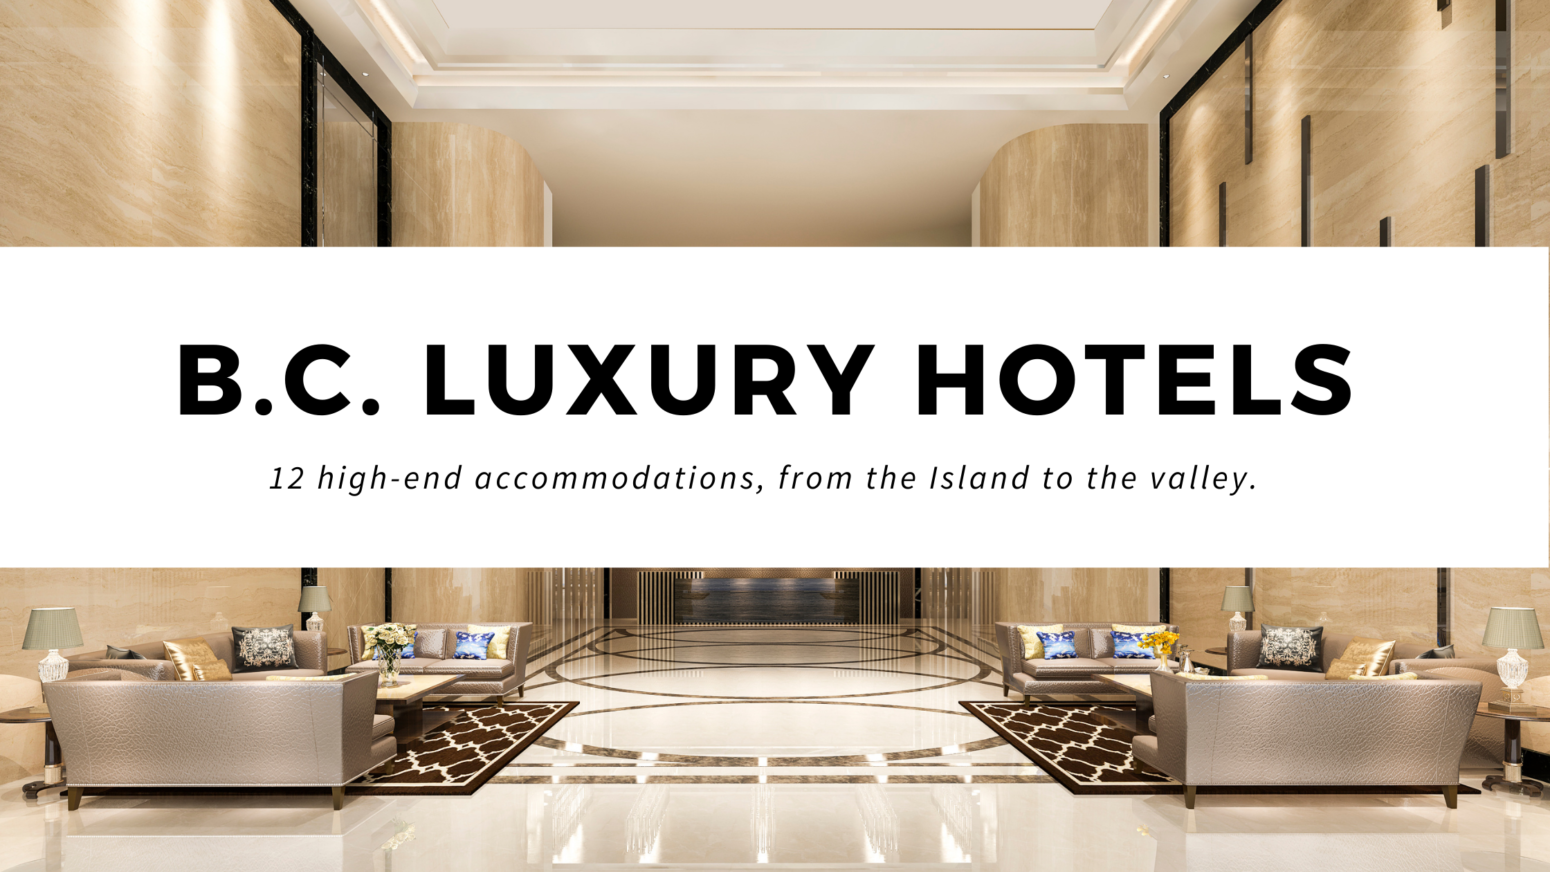 Luxury Hotels in B.C.